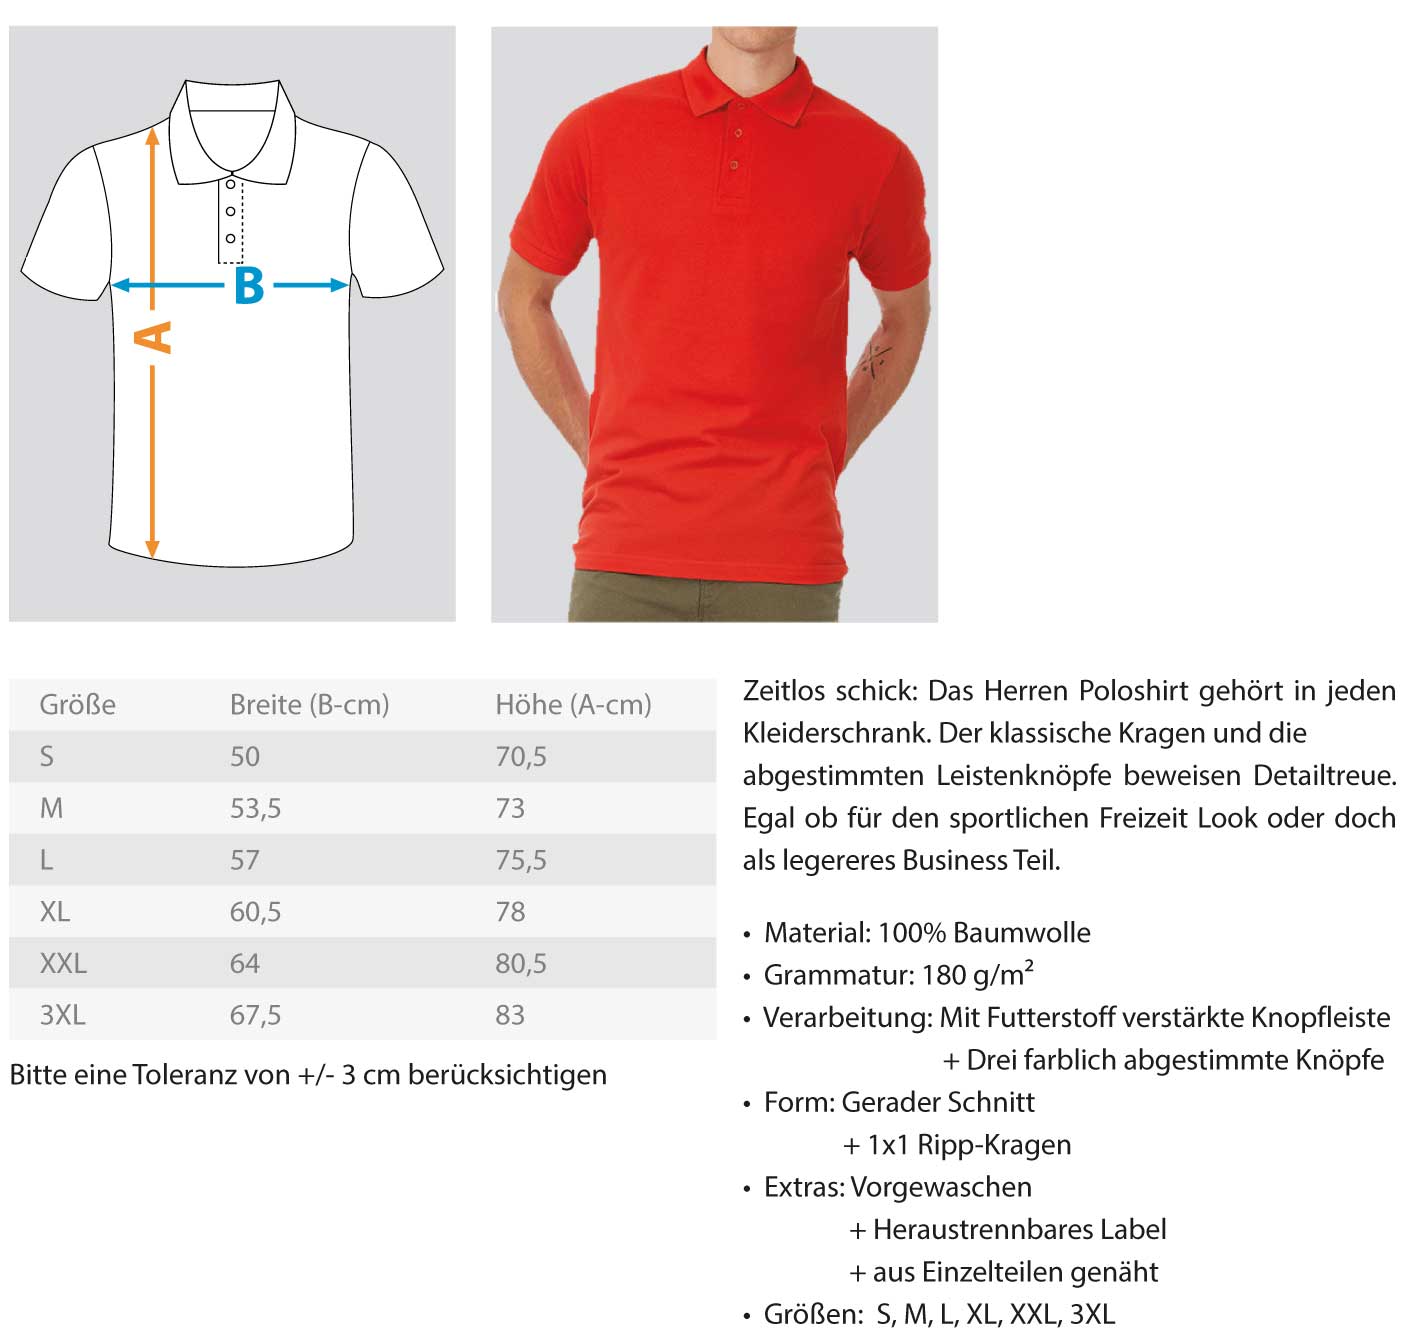 Gerüstbauer Mecklenburg Vorpommern  - Polo Shirt €29.95 Gerüstbauer - Shop >>